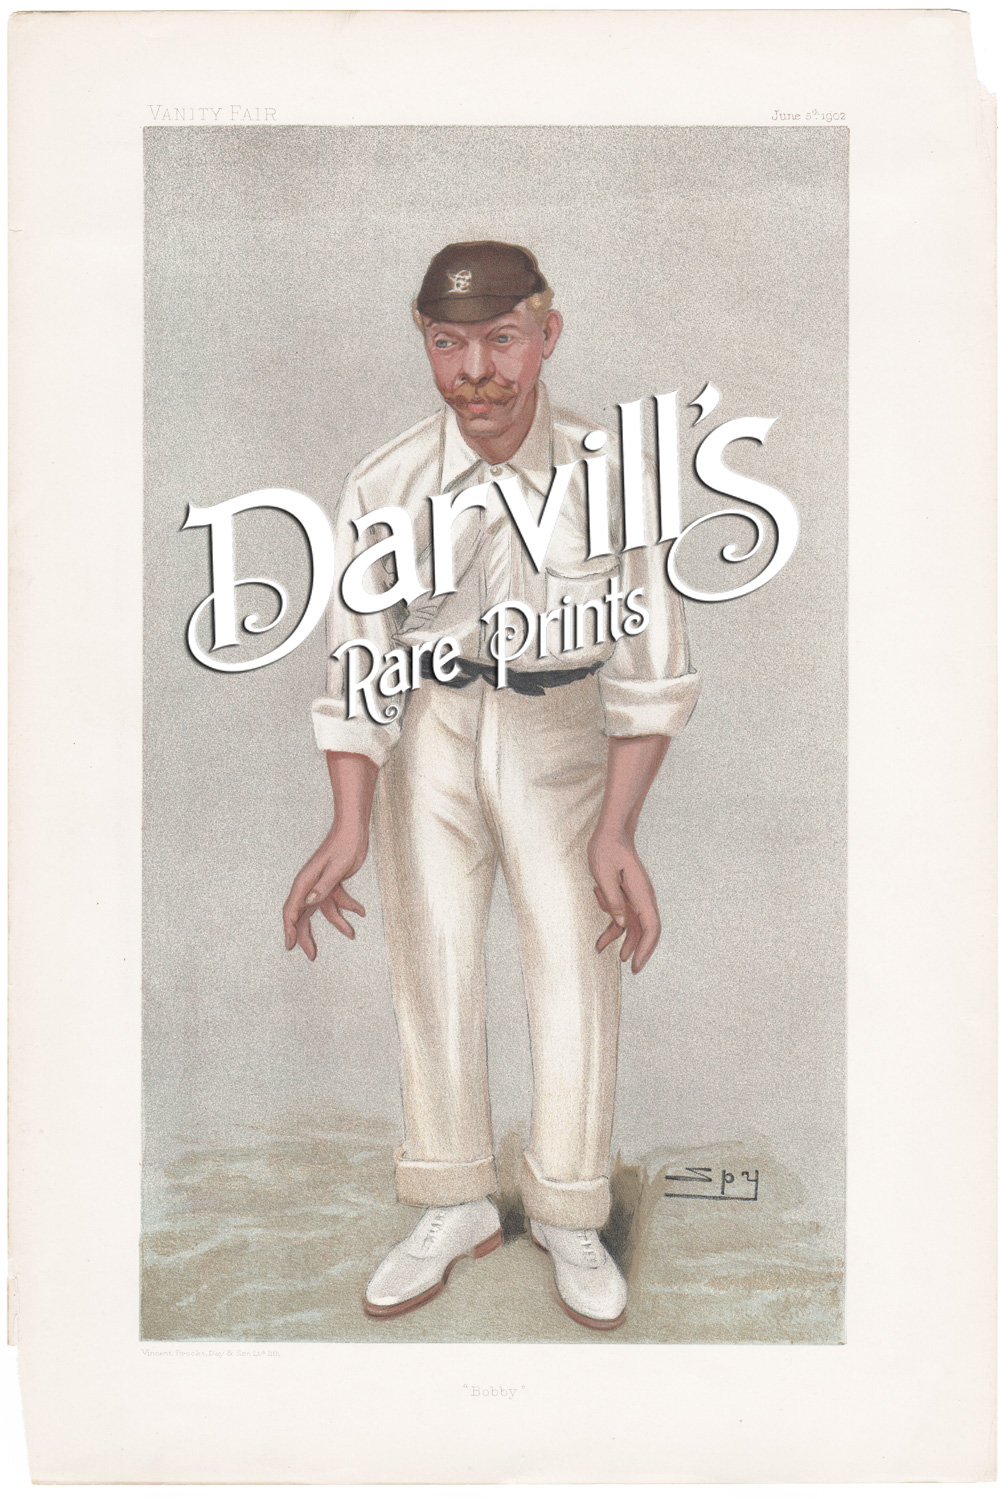 Robert Abel June 5 1902 cricket